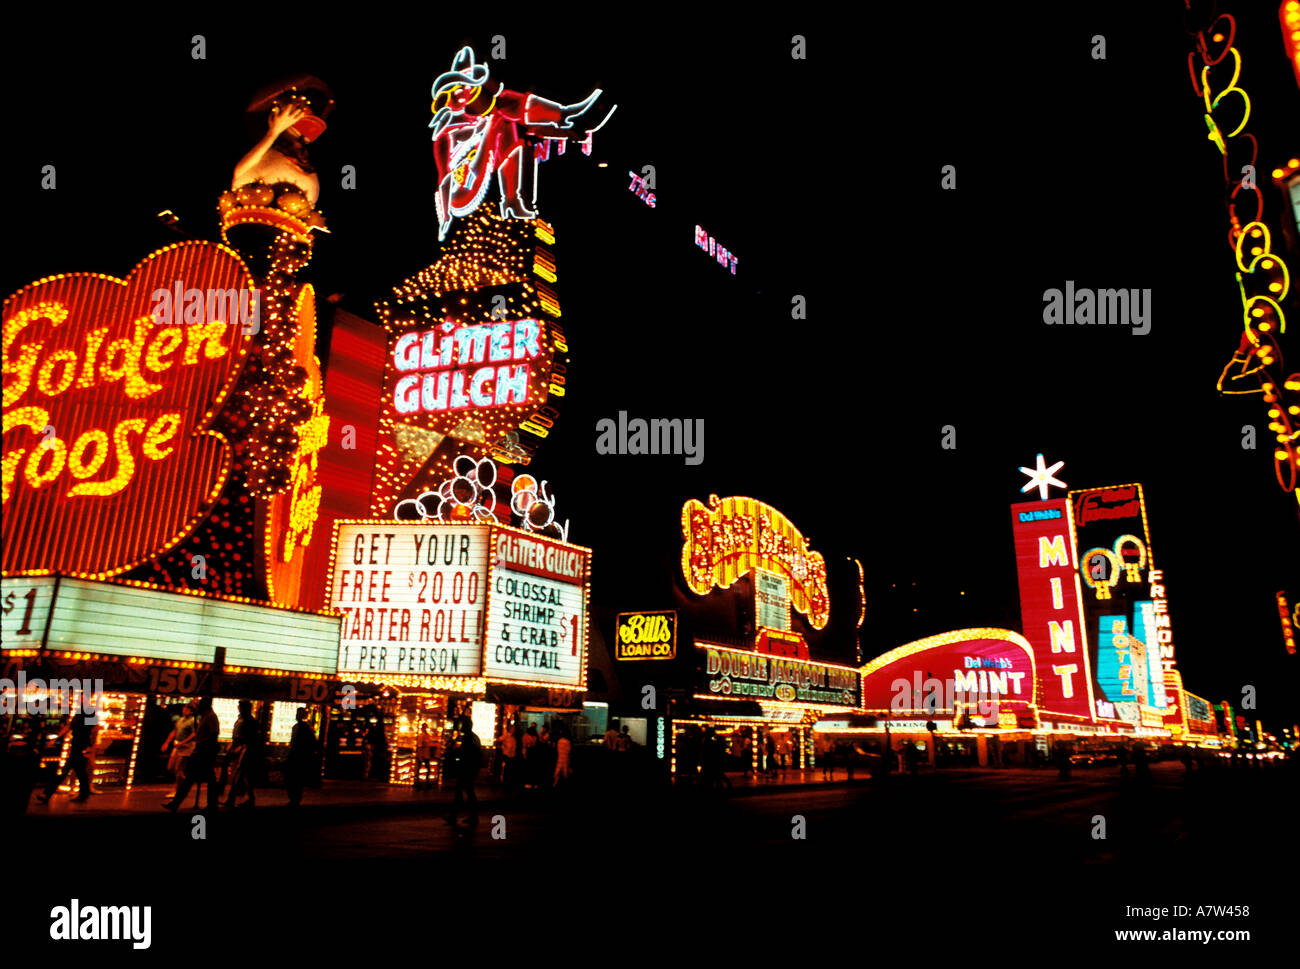 Glitter Gulch at night has famous neon displays Glitter Gulch at night gambling Las Nevada Stock Photo - Alamy